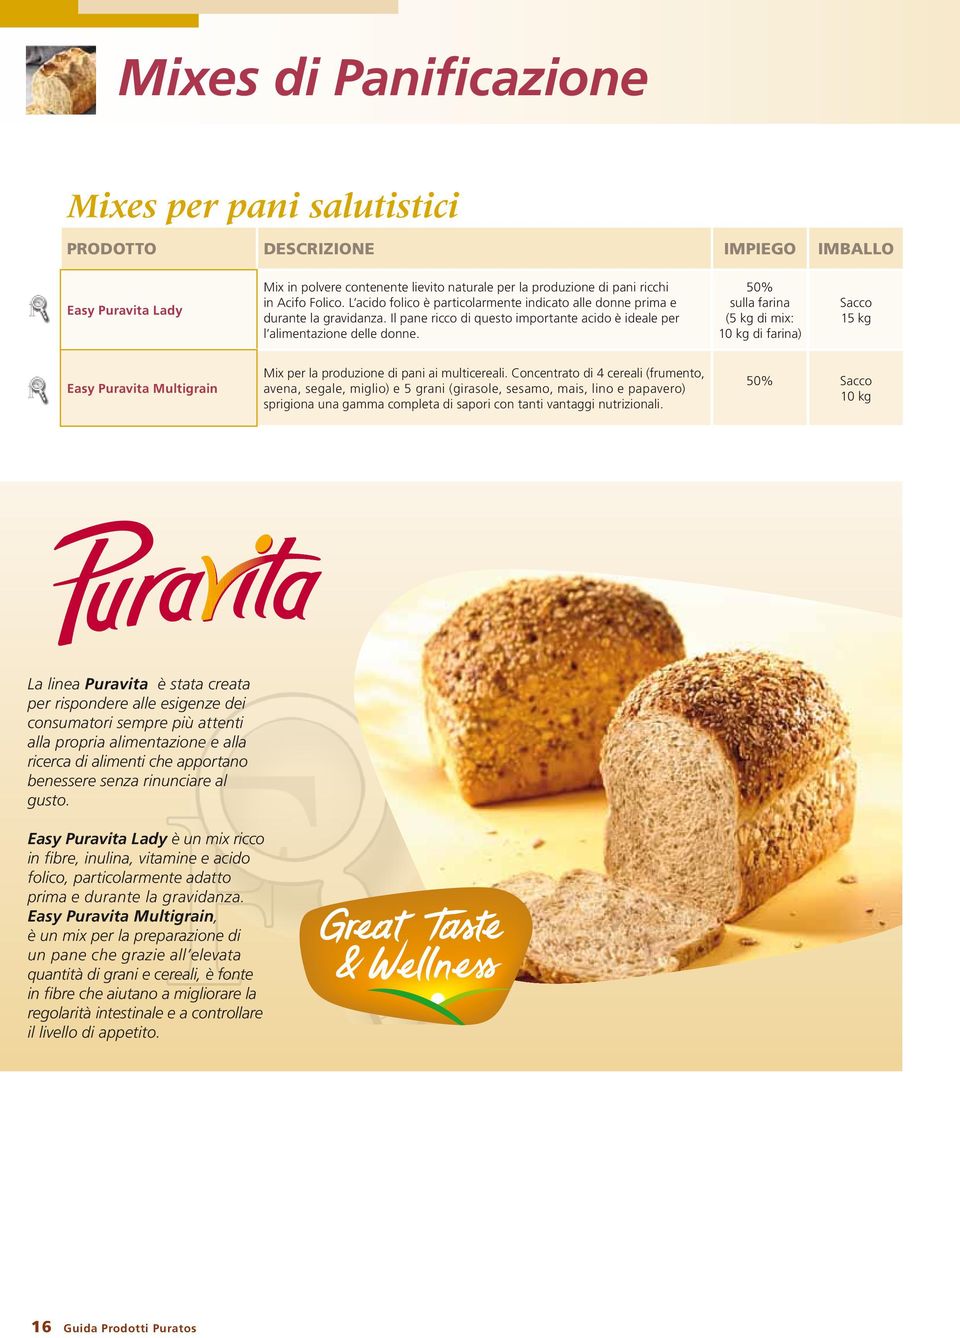 50% (5 kg di mix: di farina) 15 kg Easy Puravita Multigrain Mix per la produzione di pani ai multicereali.